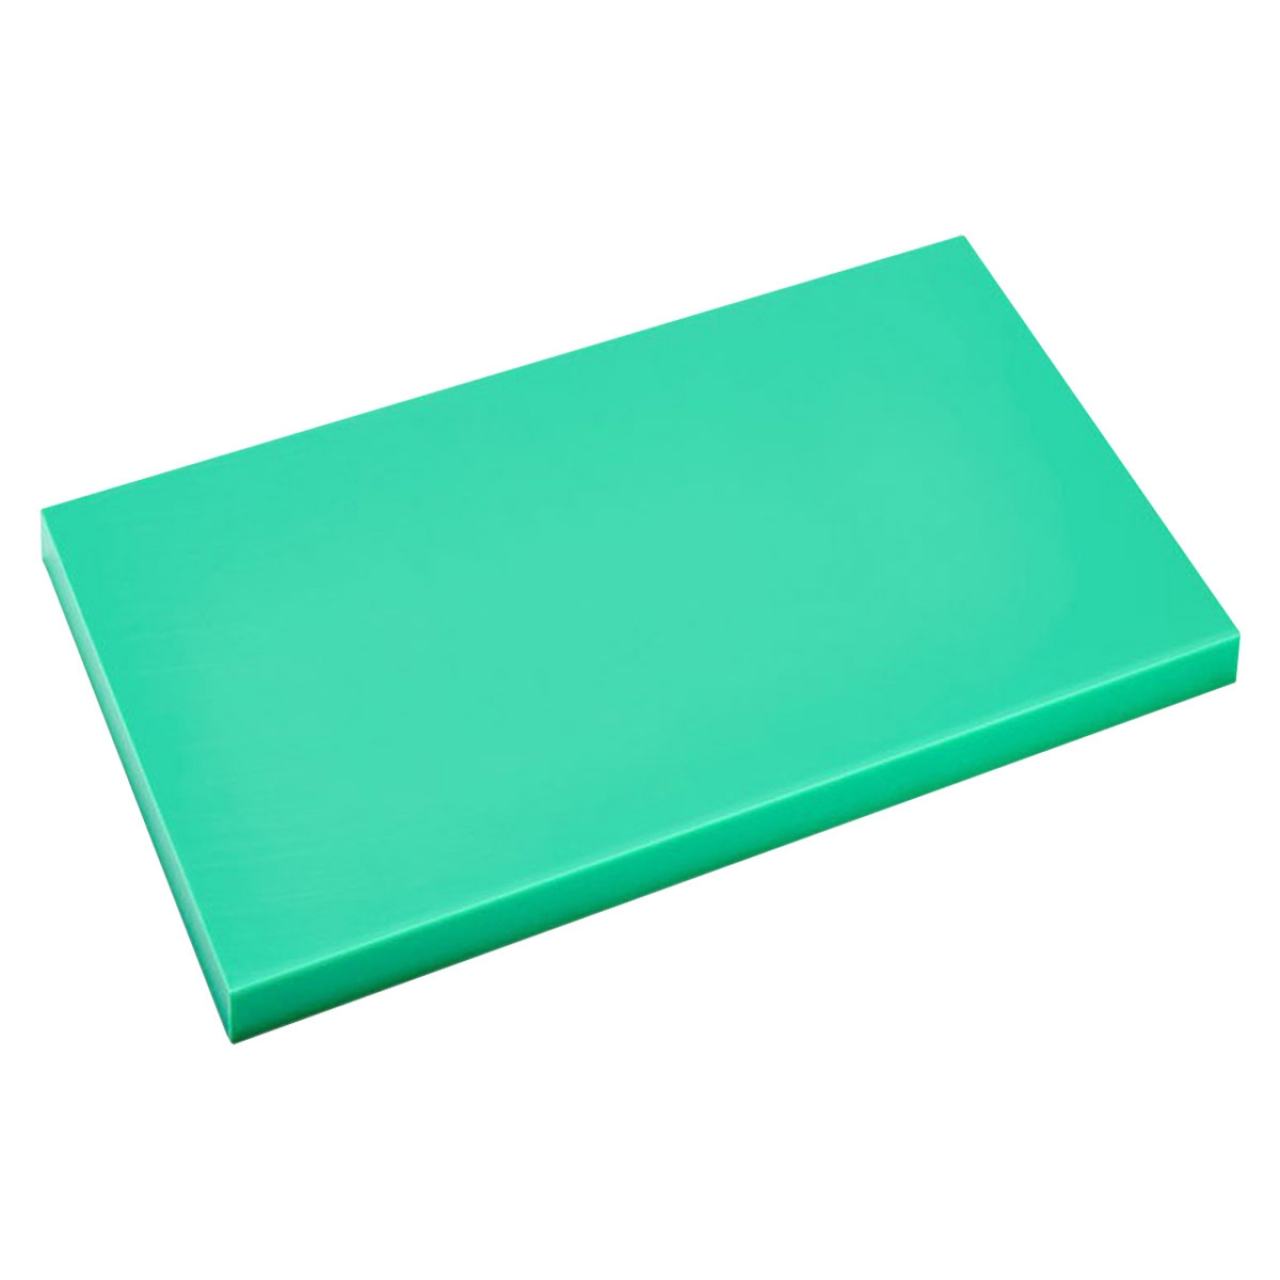 Cutting board 40x60cm green